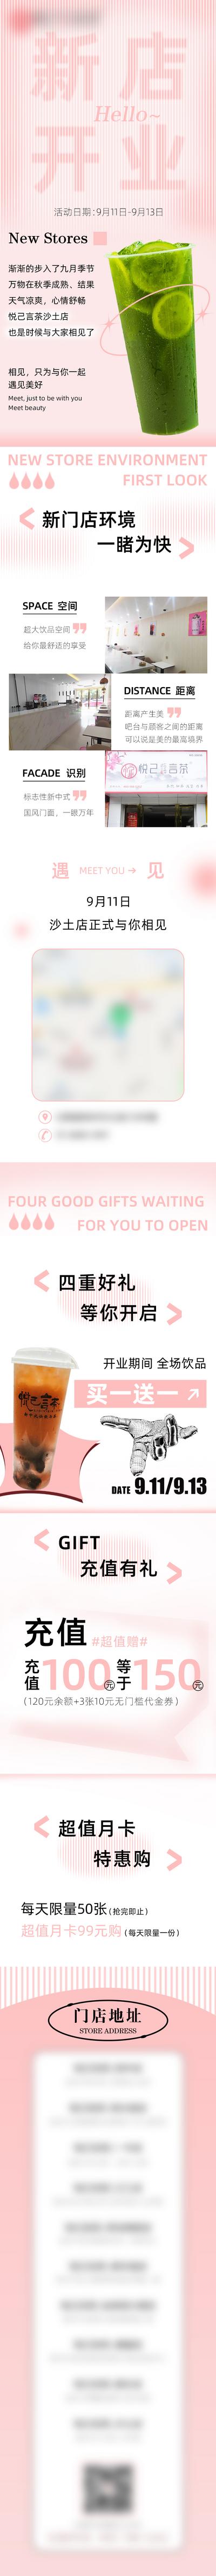 南门网 专题设计 长图 奶茶 饮品 新店开业 时尚 充值